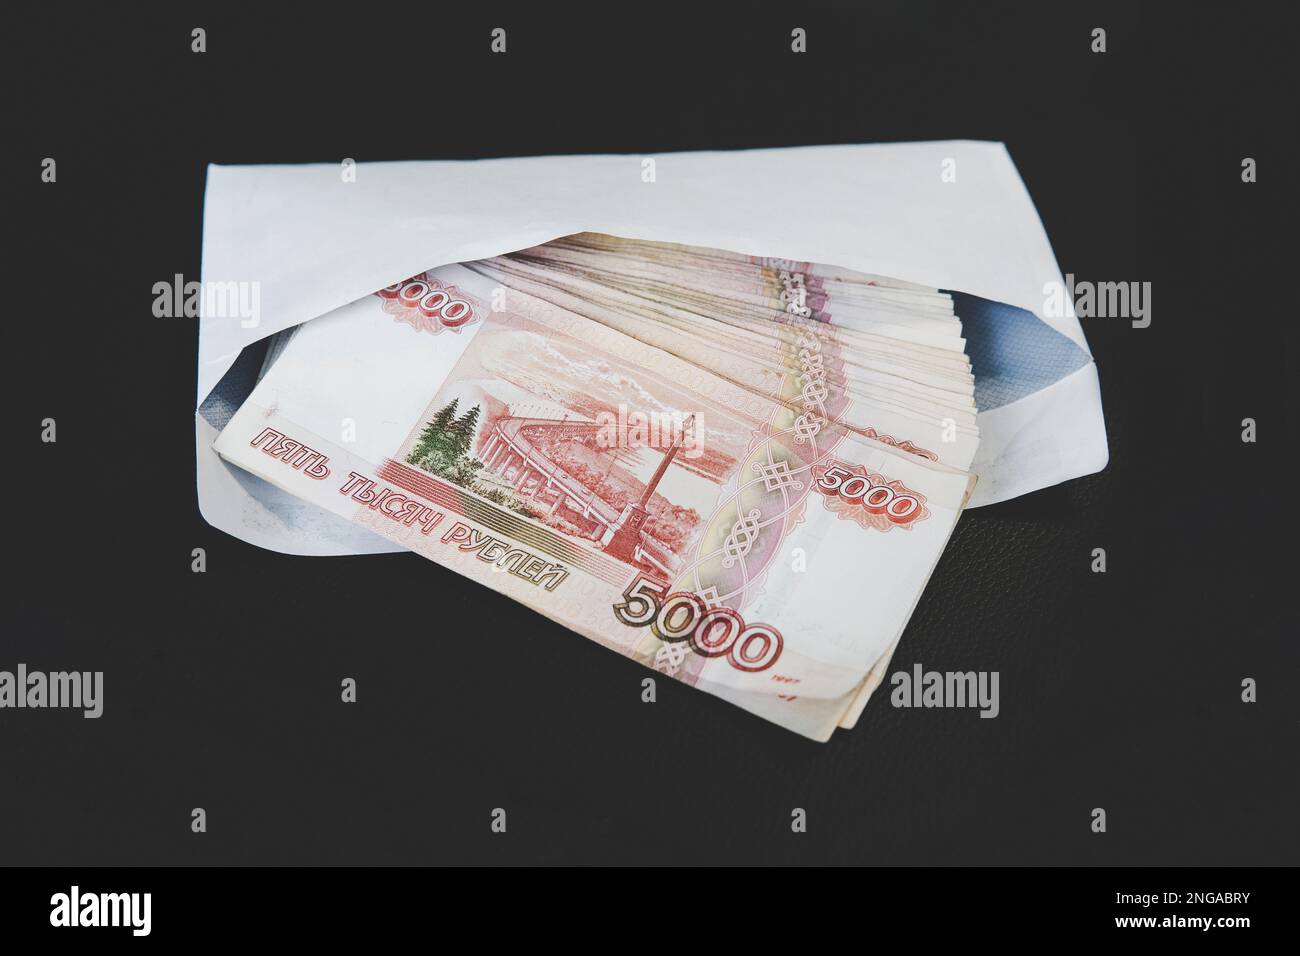 Grandes coupures de 5000 roubles dans une enveloppe blanche. Une main d'homme tient une enveloppe avec de l'argent. Le concept de corruption et de corruption Banque D'Images